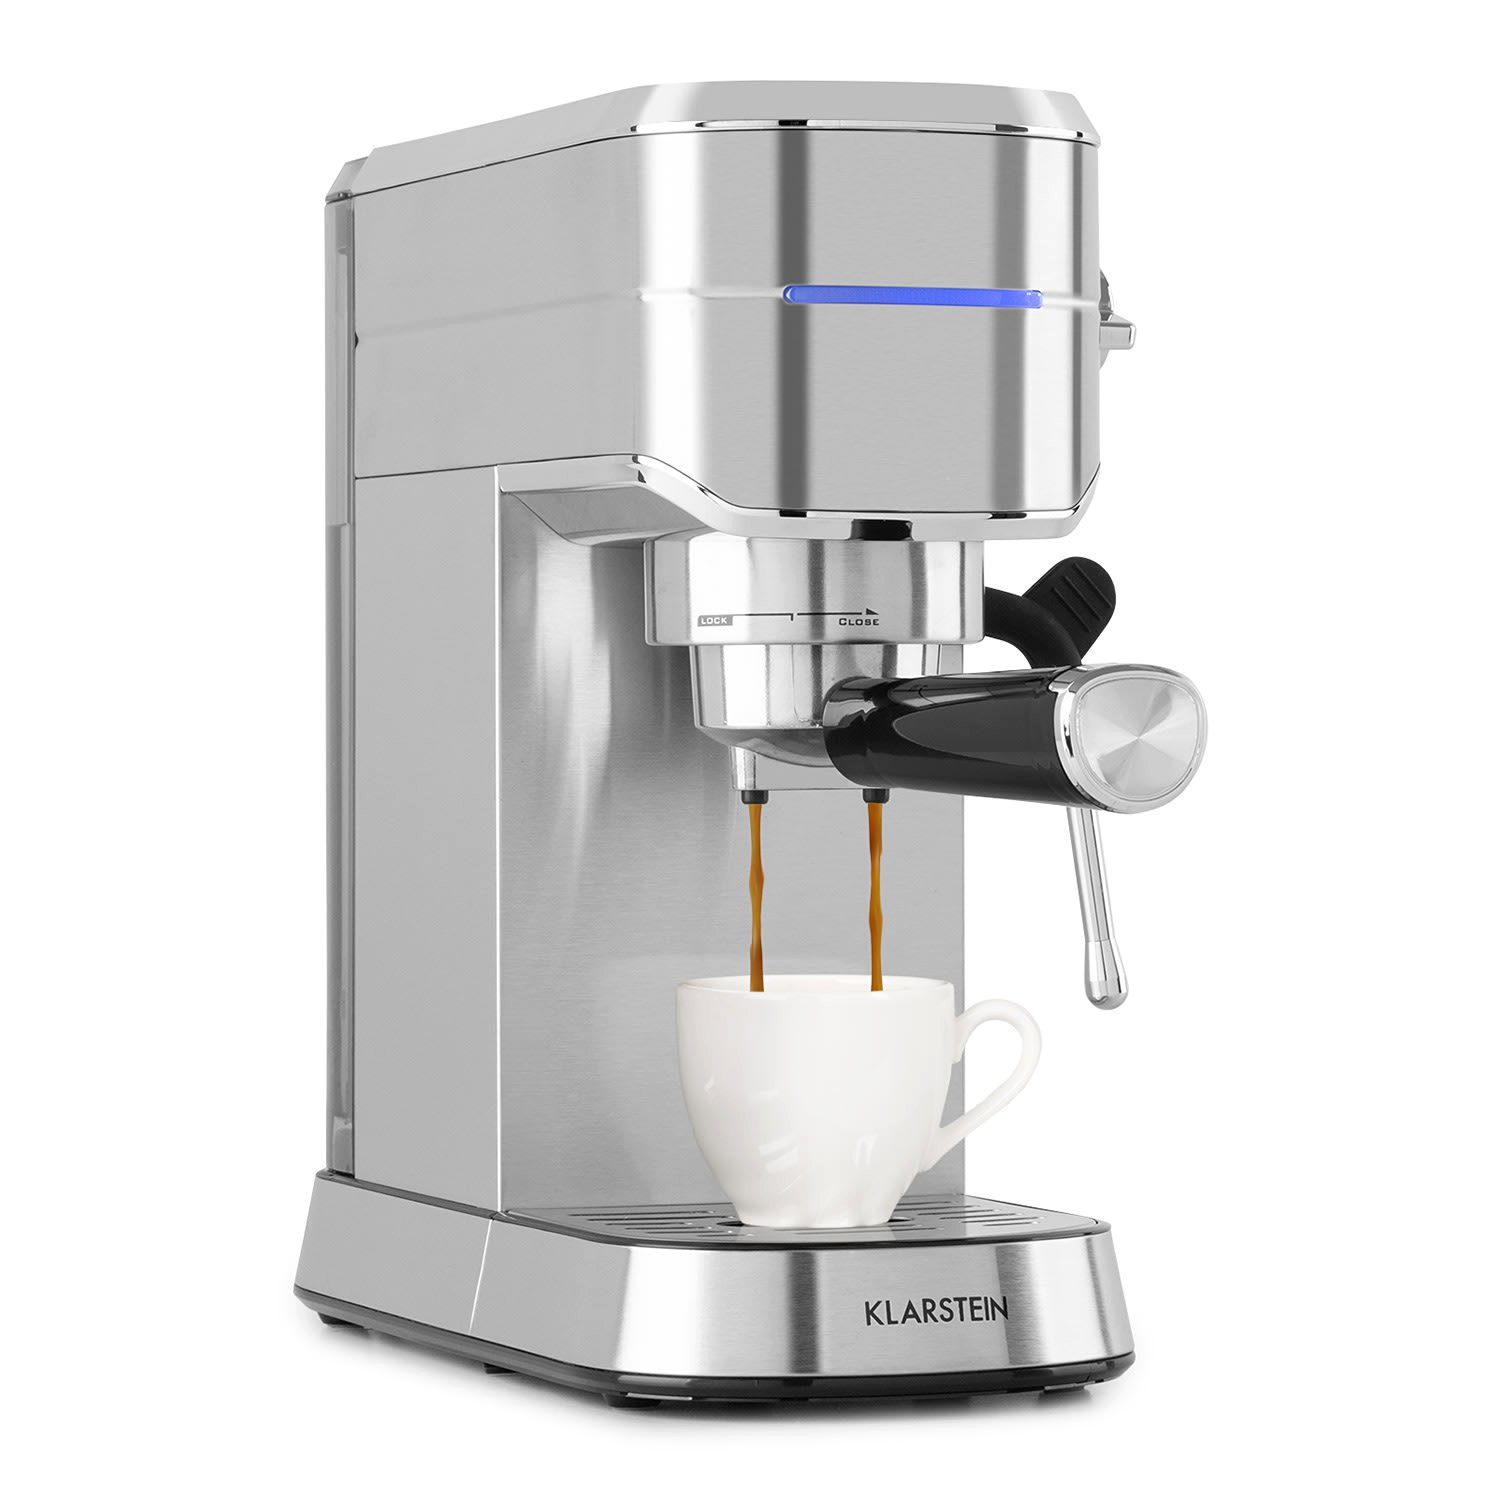 Klarstein Filterkaffeemaschine Futura Espressomaker, Für jede Tasse: Stoppfunktion für die richtige Menge